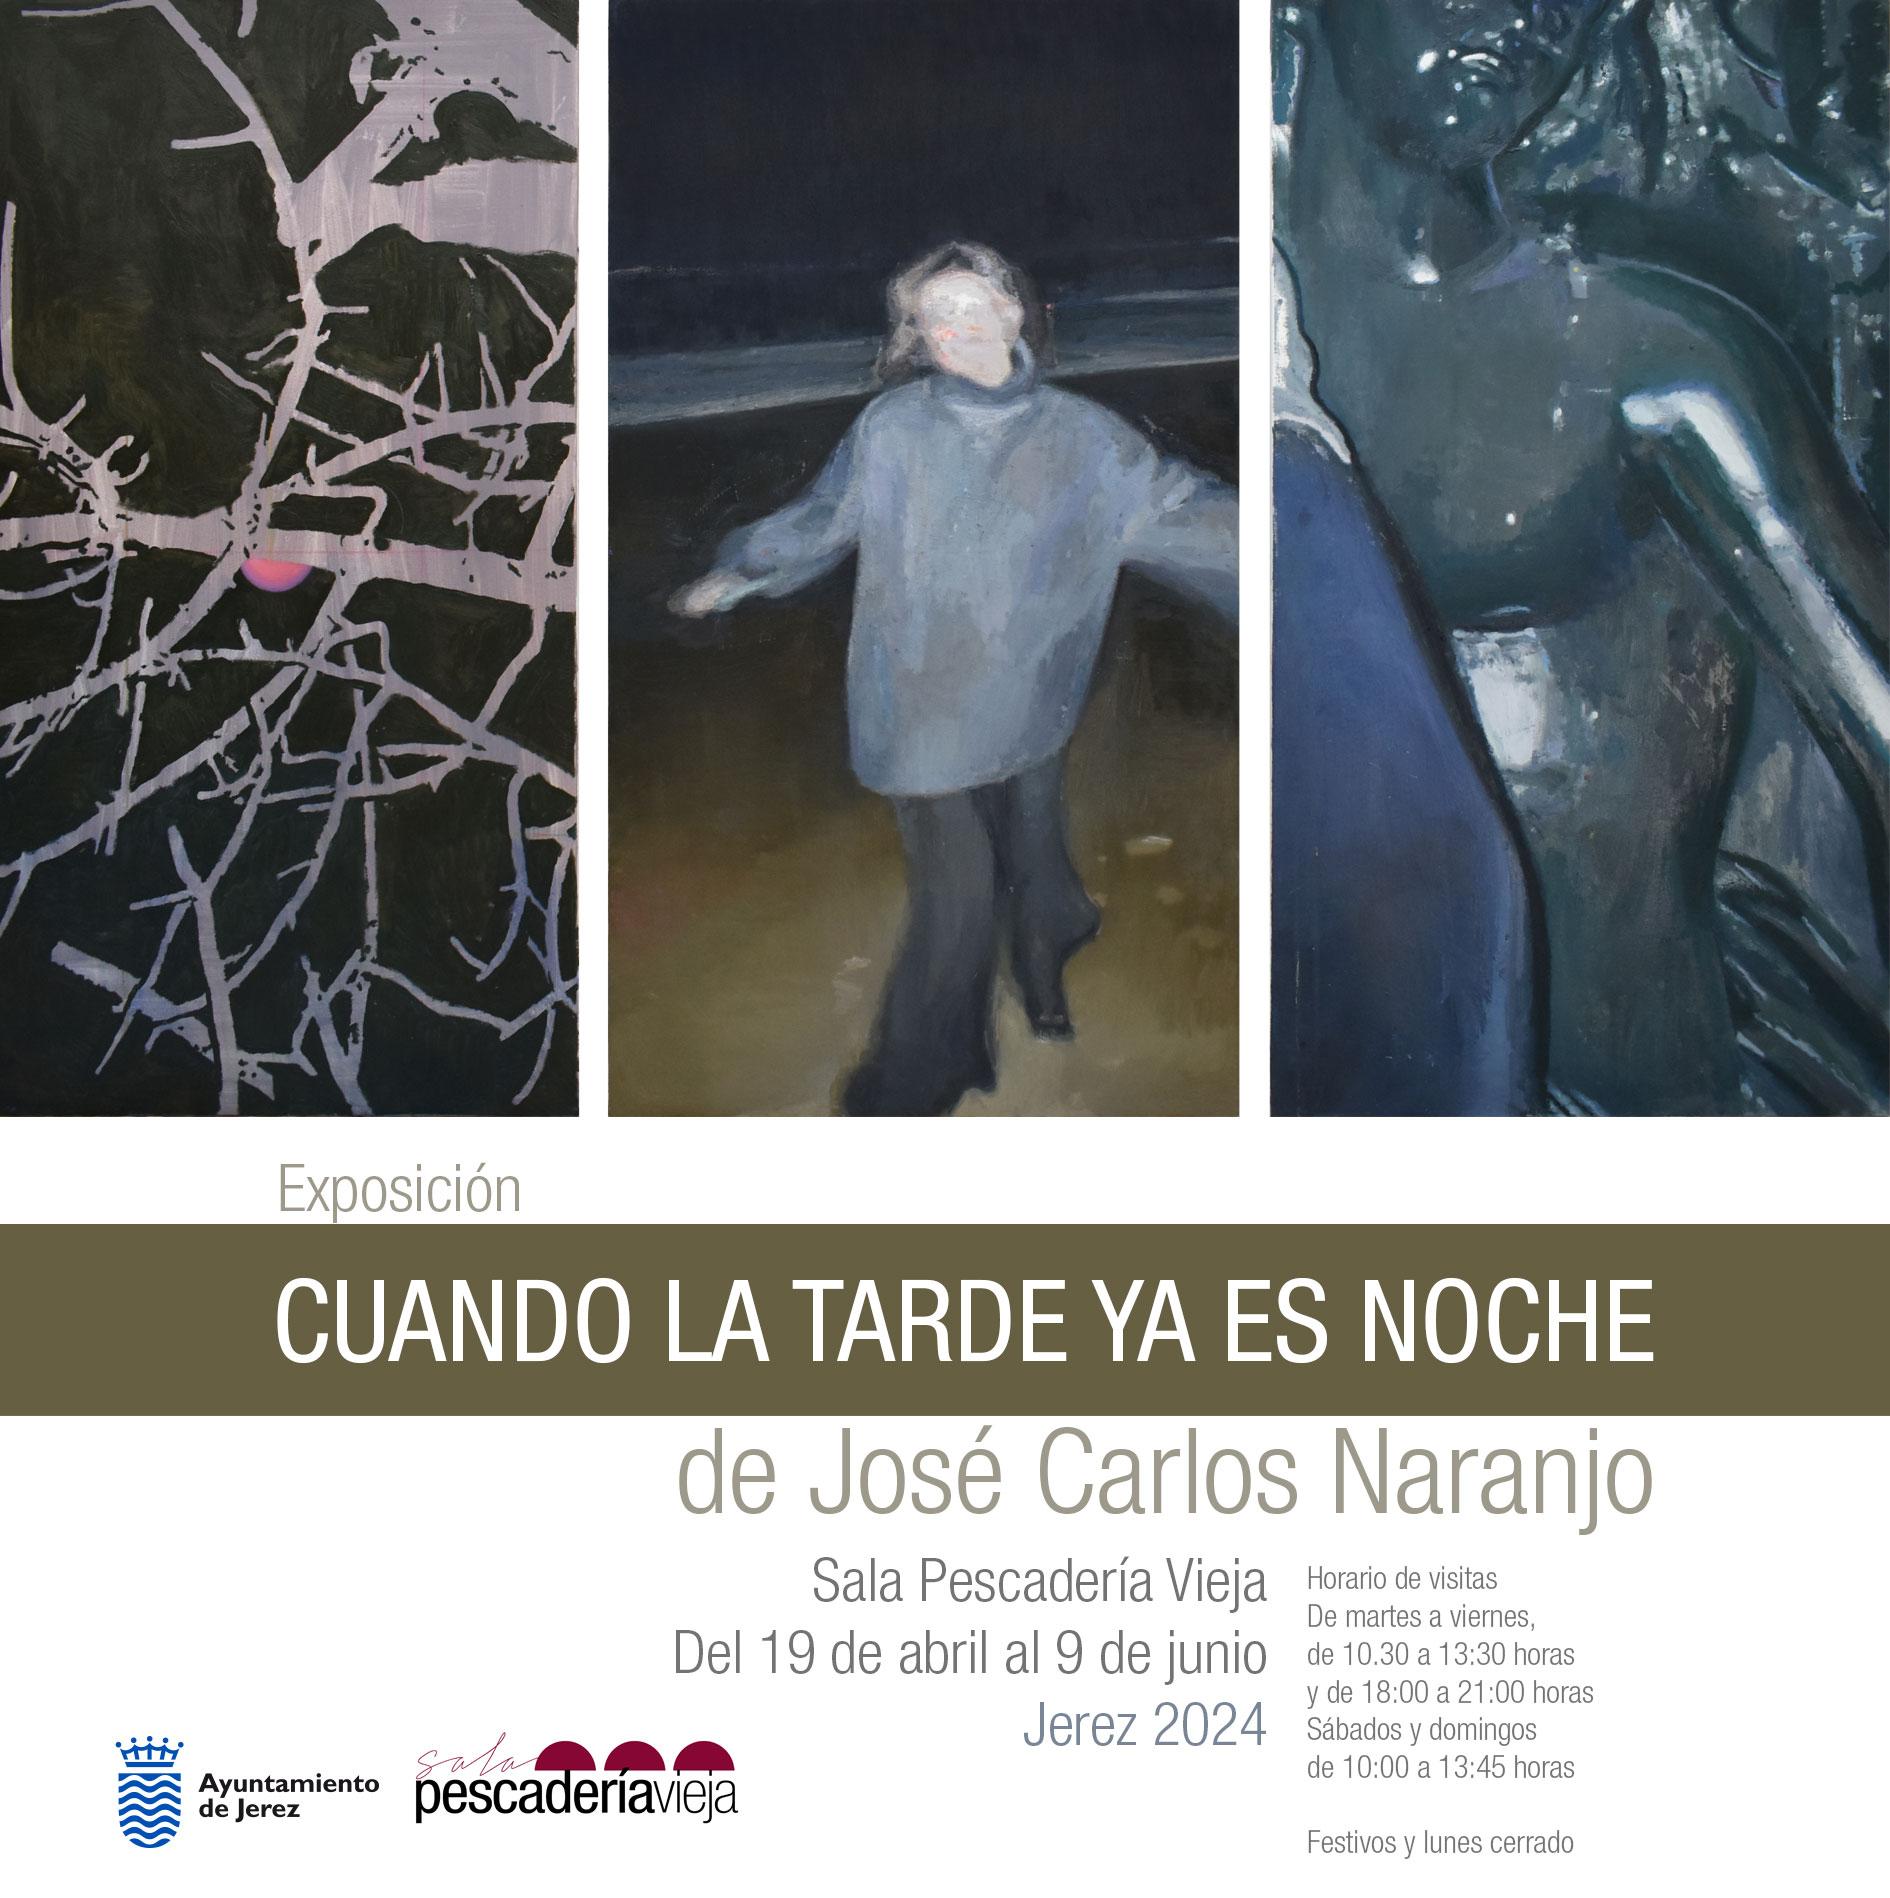 La Sala Pescadería Vieja expone 'Cuando la tarde ya es noche', del pintor José Carlos Naranjo